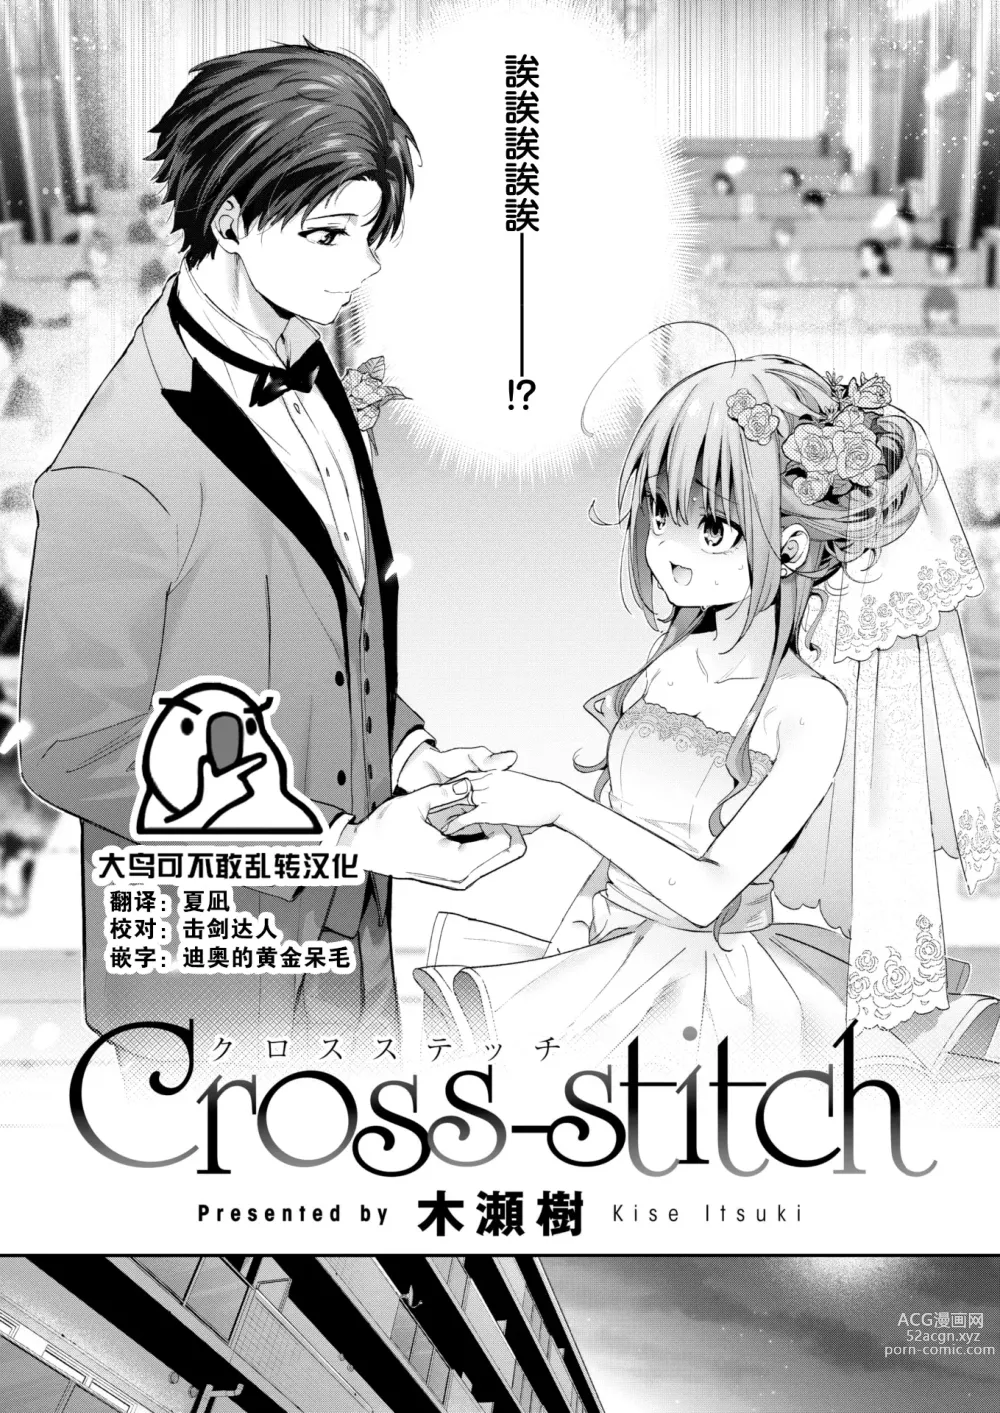 Page 1 of manga Cross-stitch